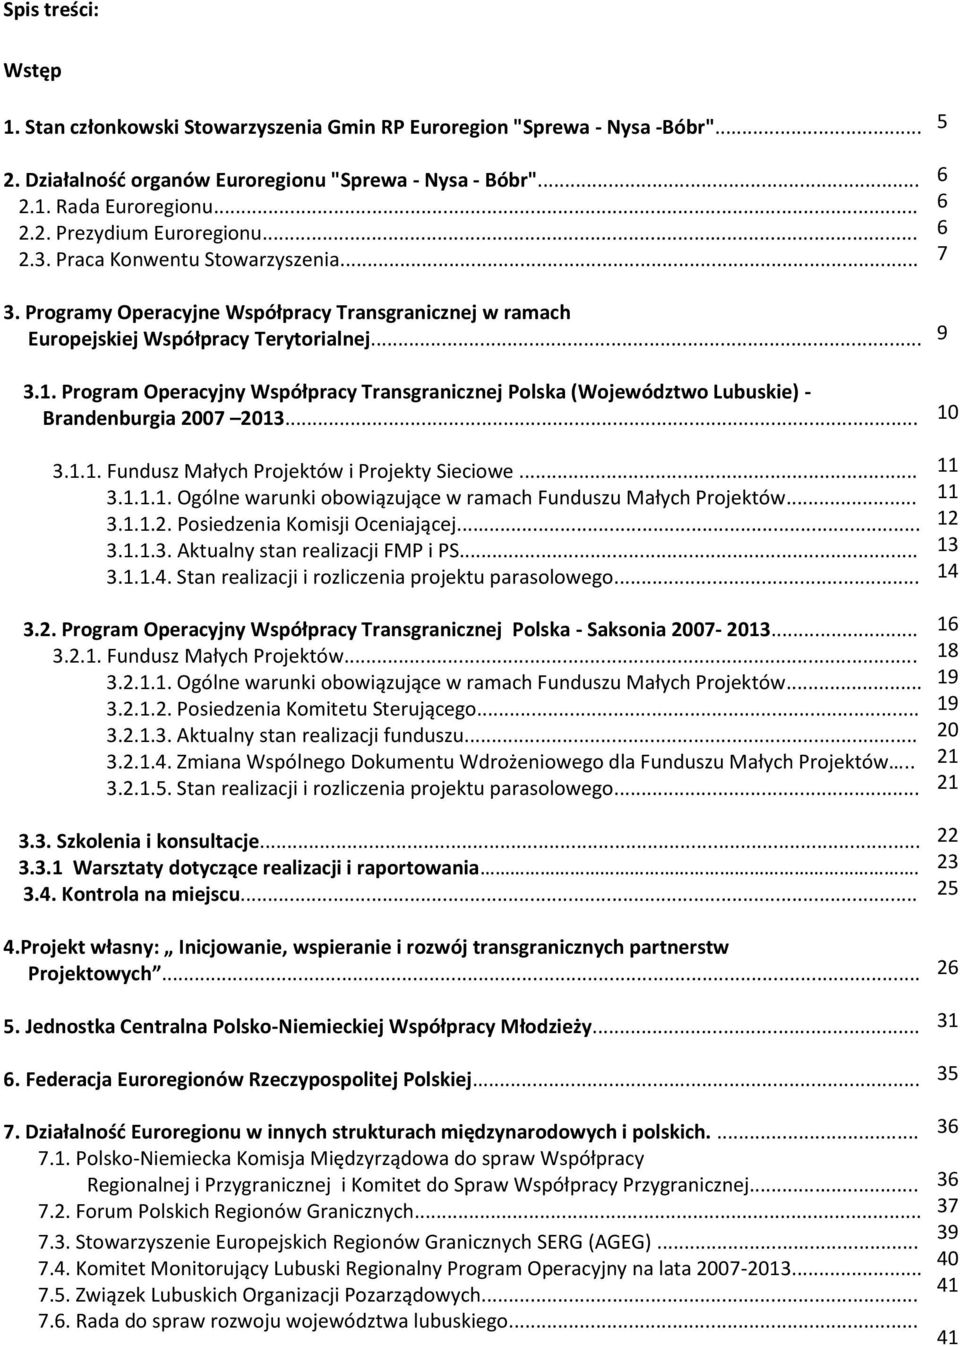 Program Operacyjny Współpracy Transgranicznej Polska (Województwo Lubuskie) - Brandenburgia 2007 2013... 3.1.1. Fundusz Małych Projektów i Projekty Sieciowe... 3.1.1.1. Ogólne warunki obowiązujące w ramach Funduszu Małych Projektów.